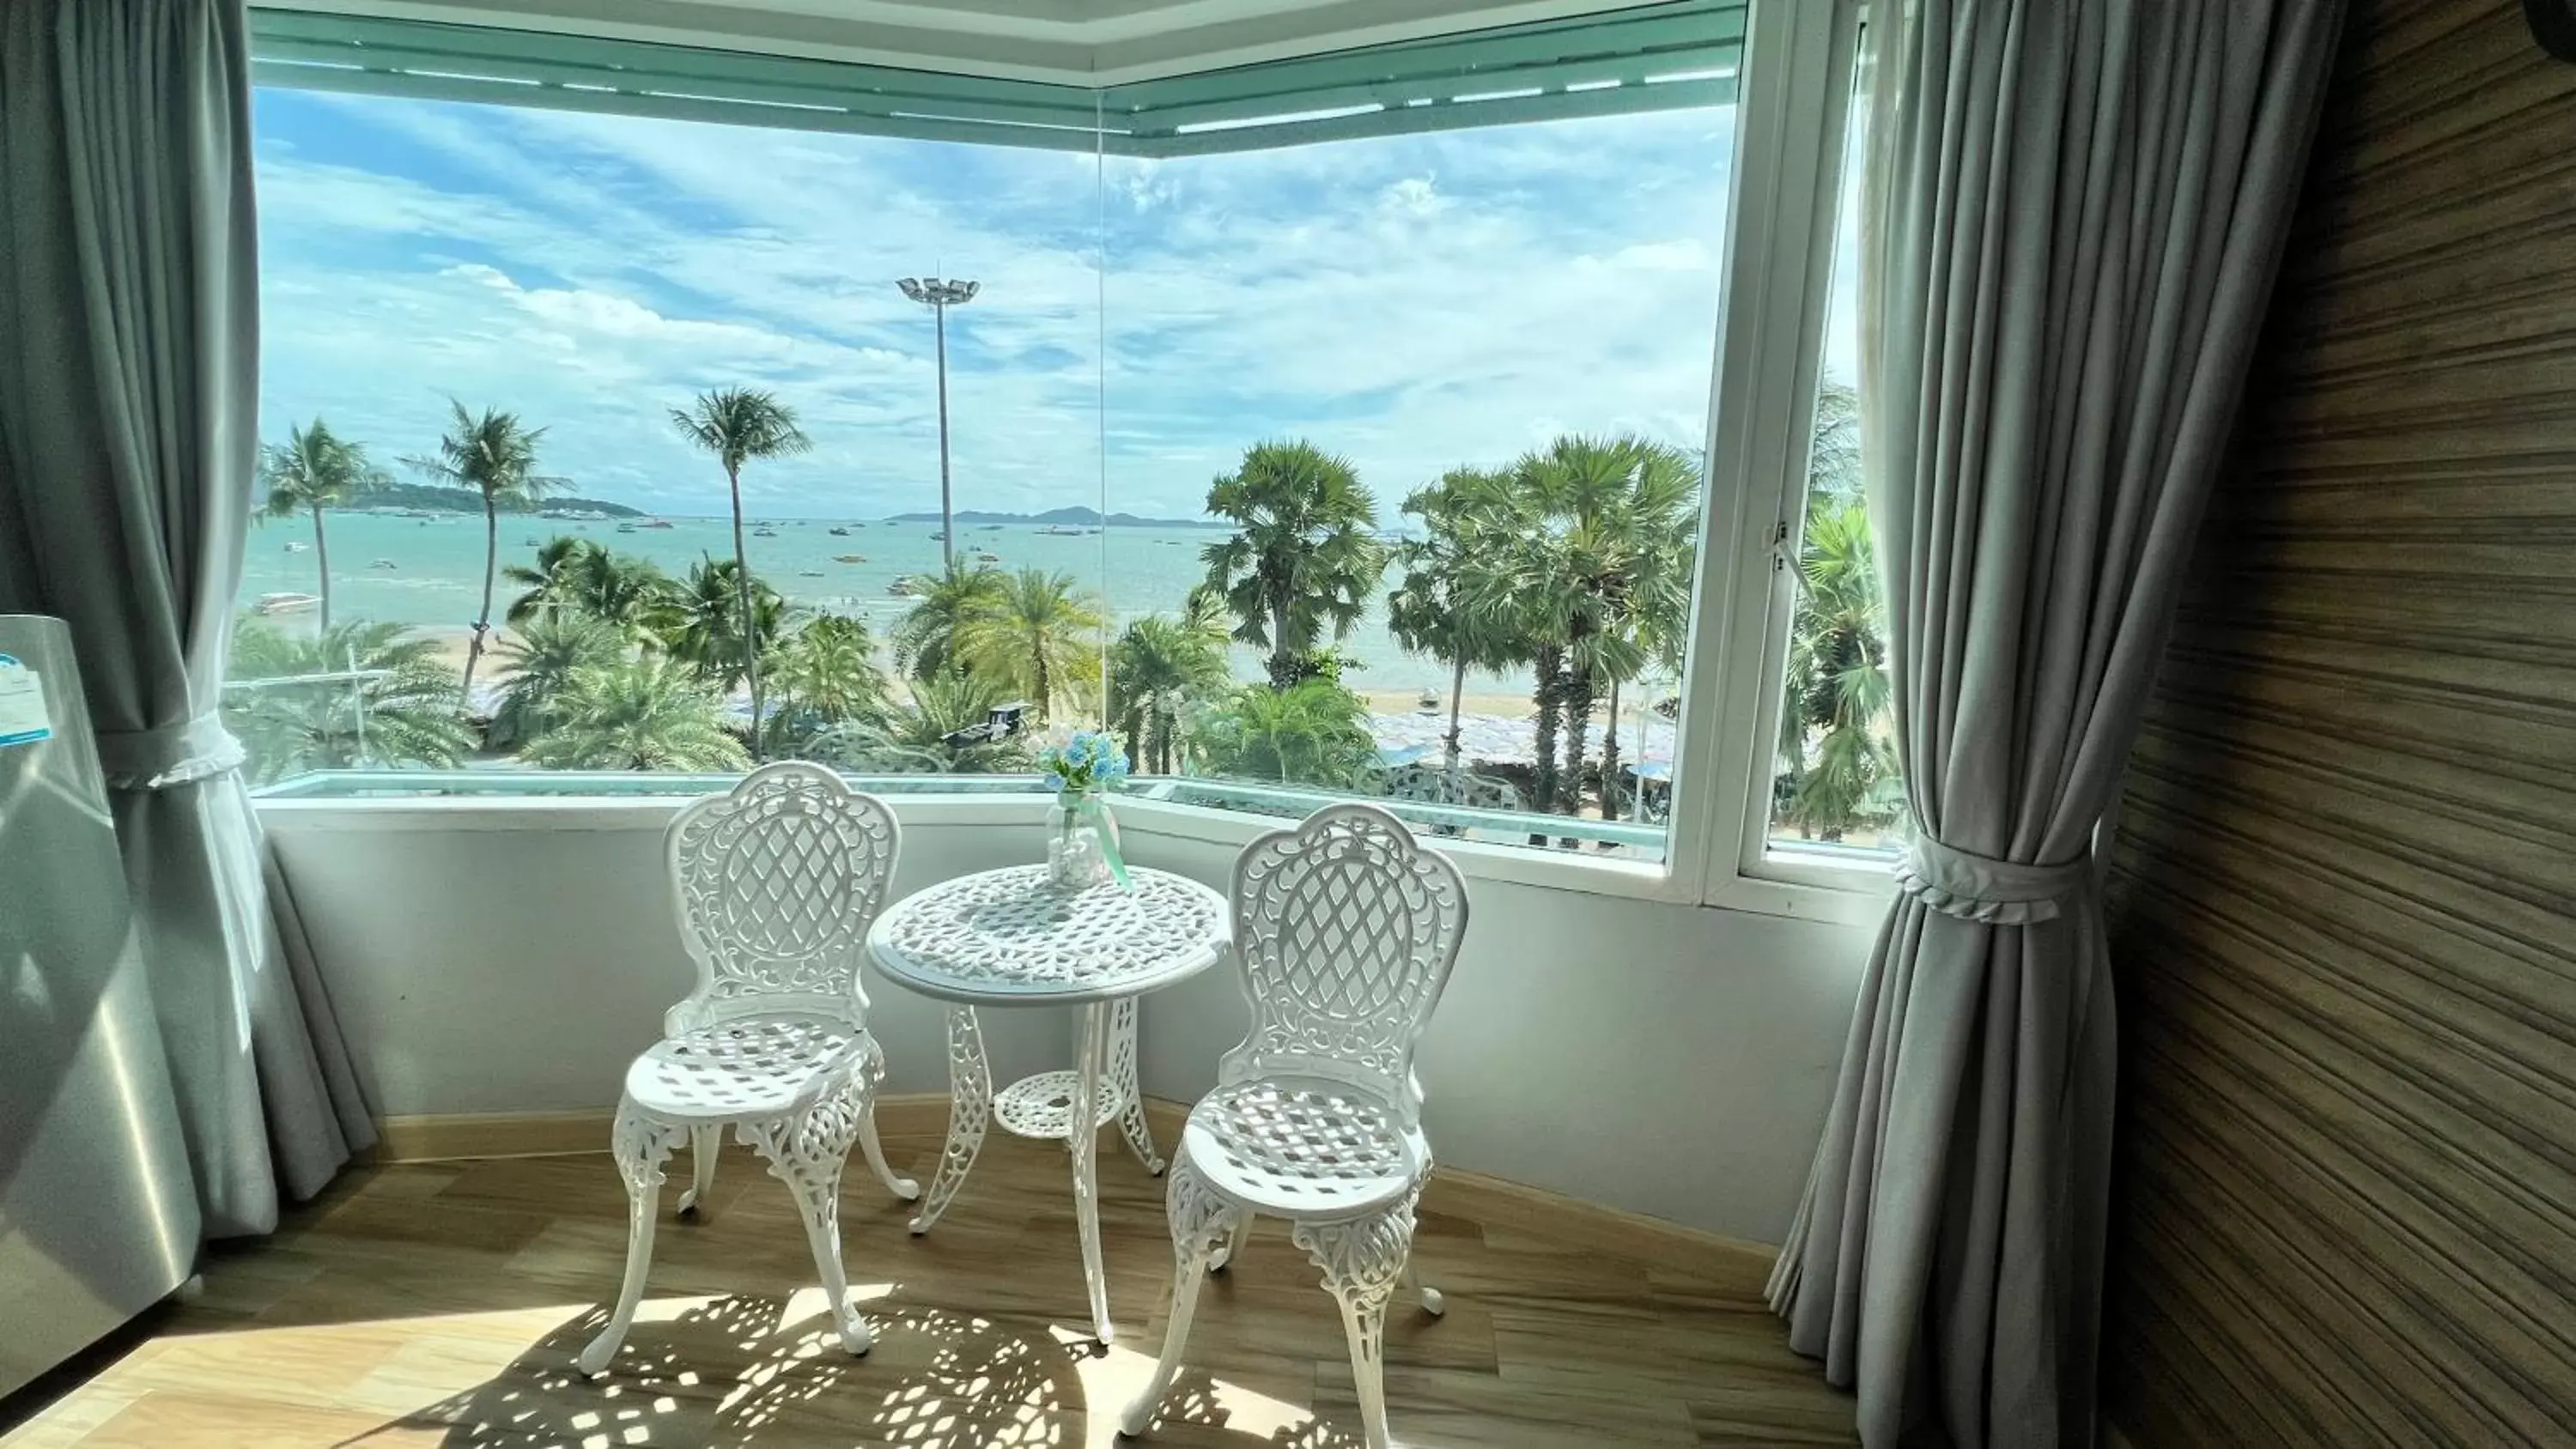 The Beach Front Resort, Pattaya